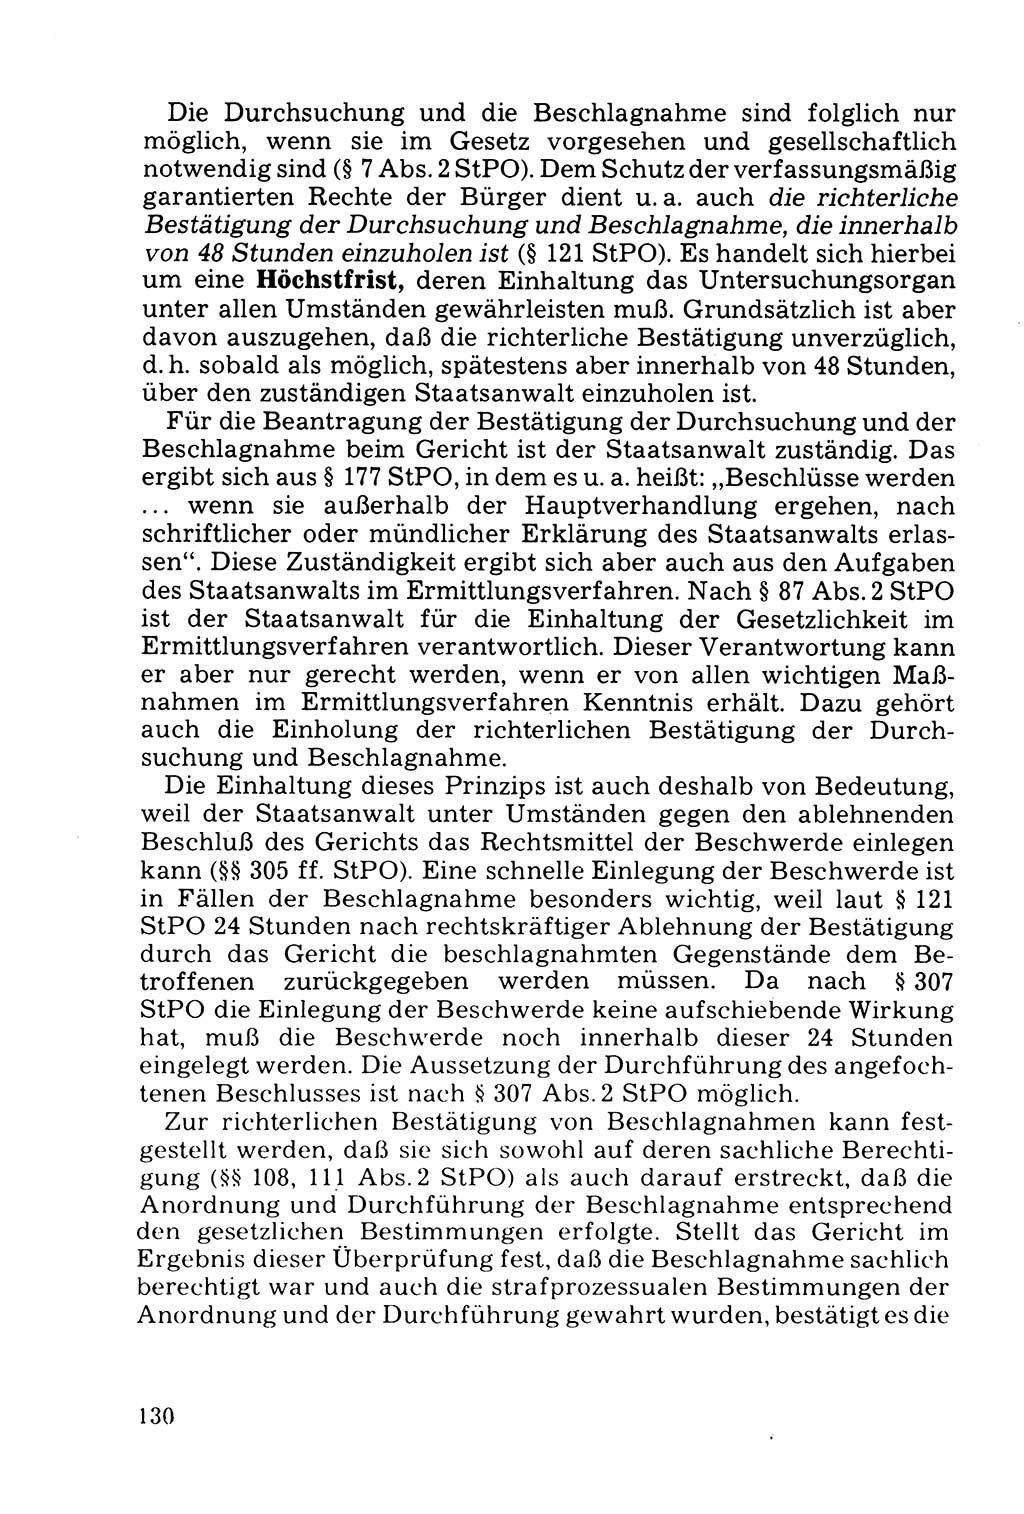 Die Durchsuchung und die Beschlagnahme [Deutsche Demokratische Republik (DDR)] 1979, Seite 130 (Durchs. Beschl. DDR 1979, S. 130)